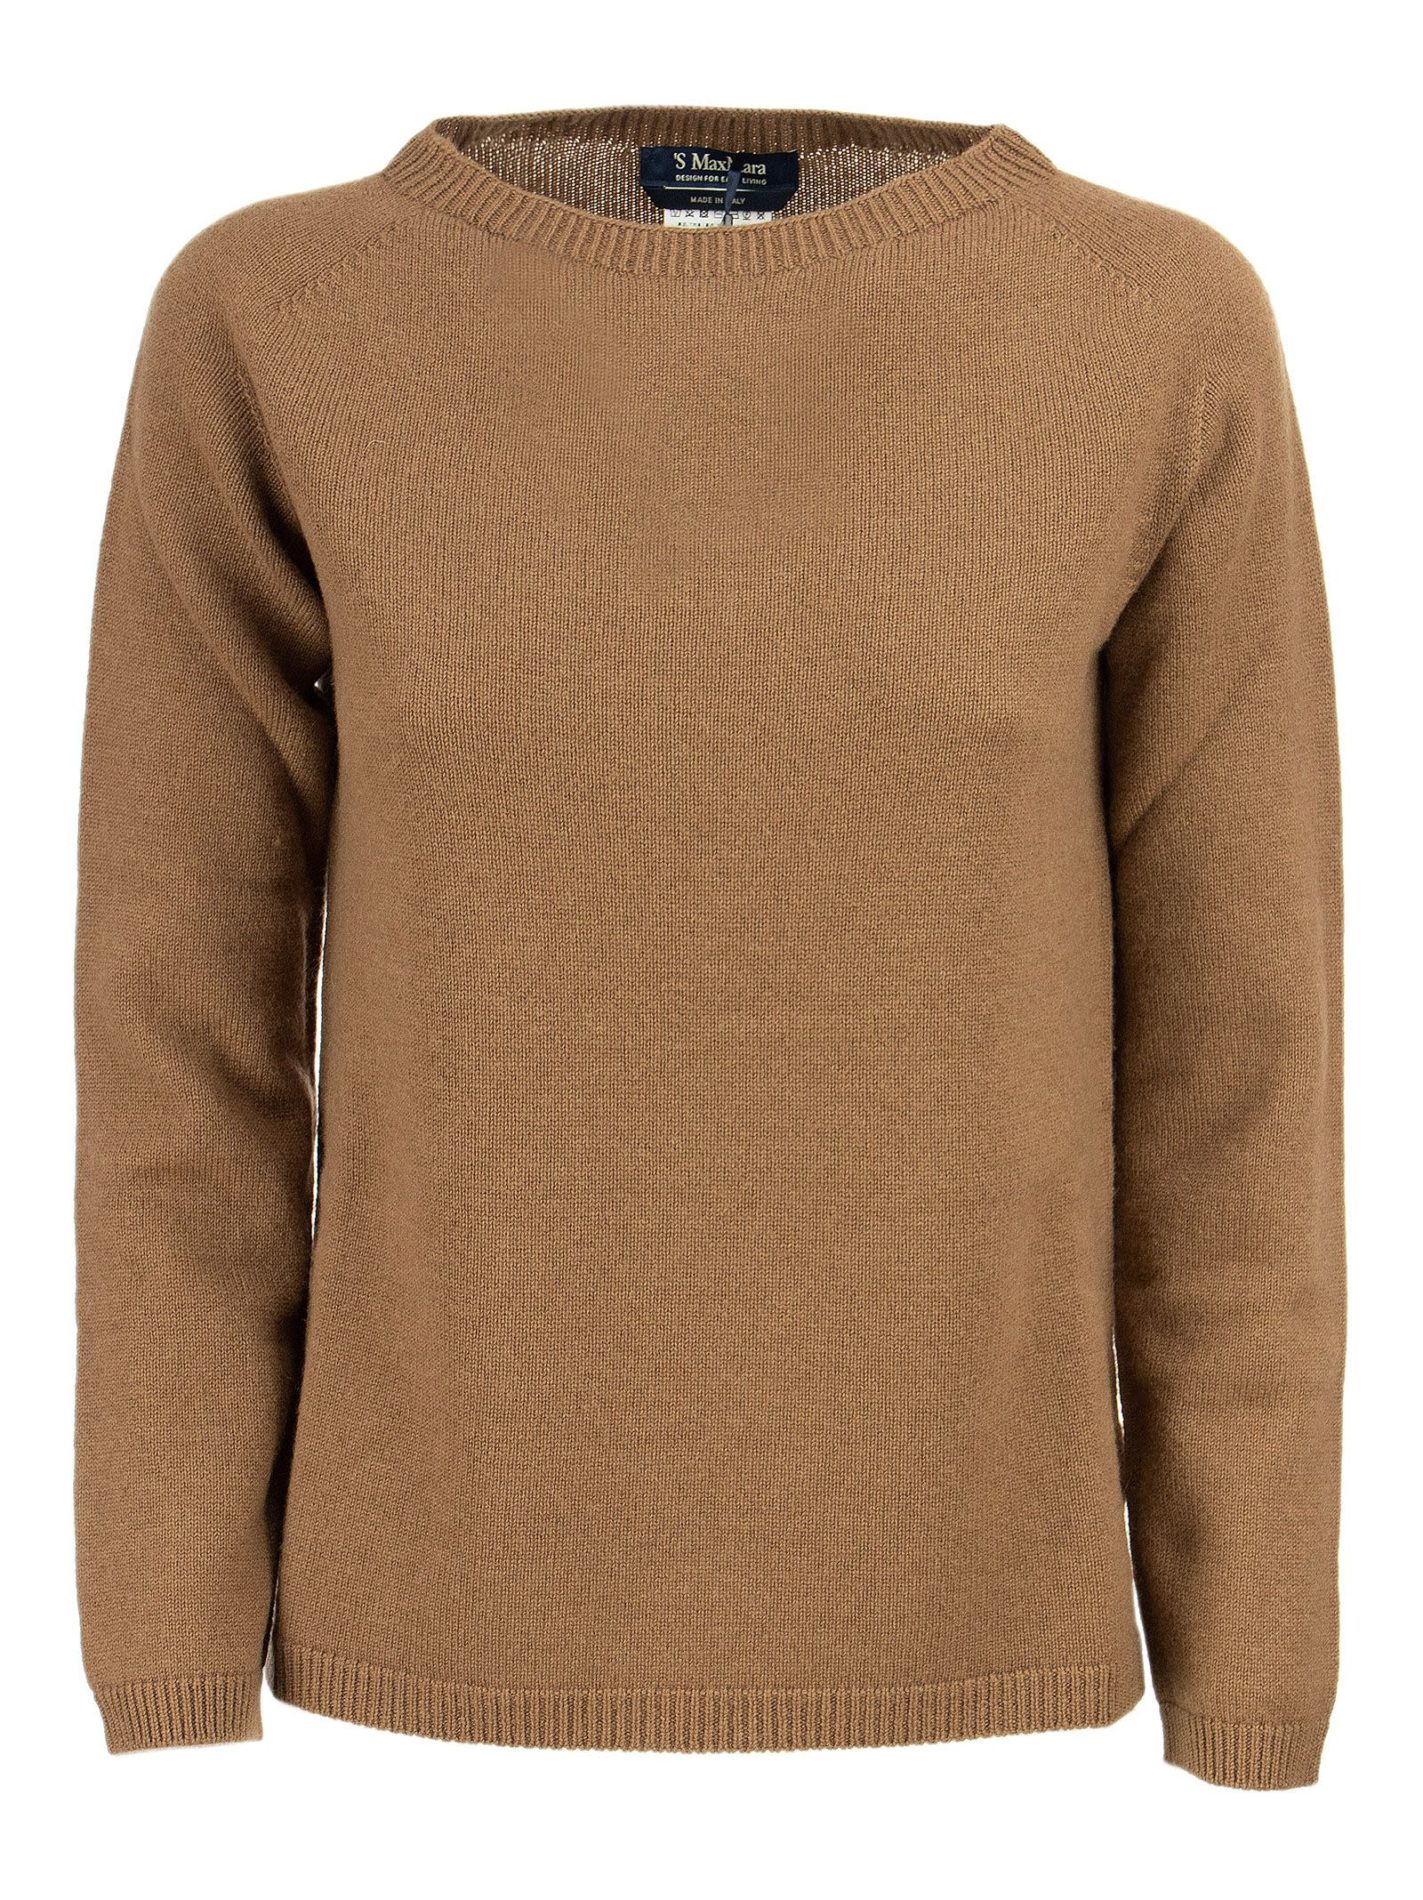 GIOSE - Pure Cashmere Sweater - Bellettini.com